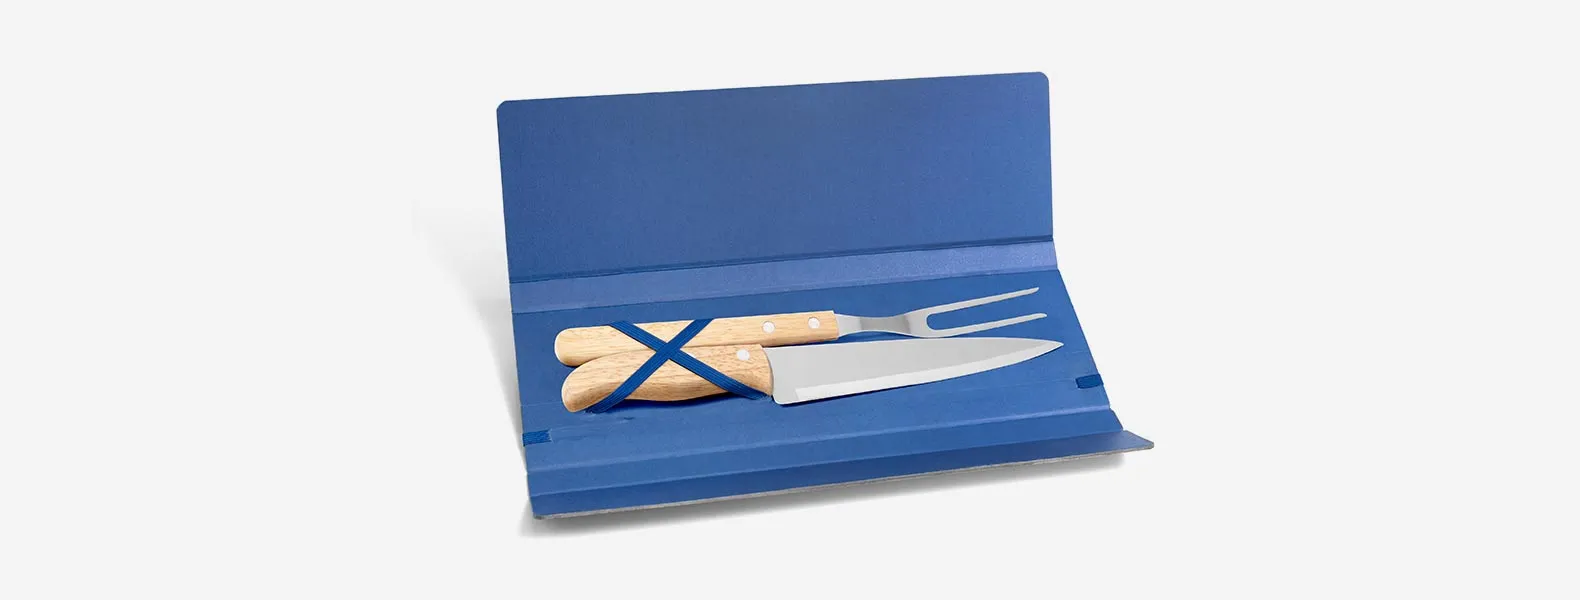 Conjunto composto por uma faca 7” e um garfo trinchante, ambos com cabos em madeira e lâminas em aço Inox. Estão organizados em uma pasta azul com elásticos.